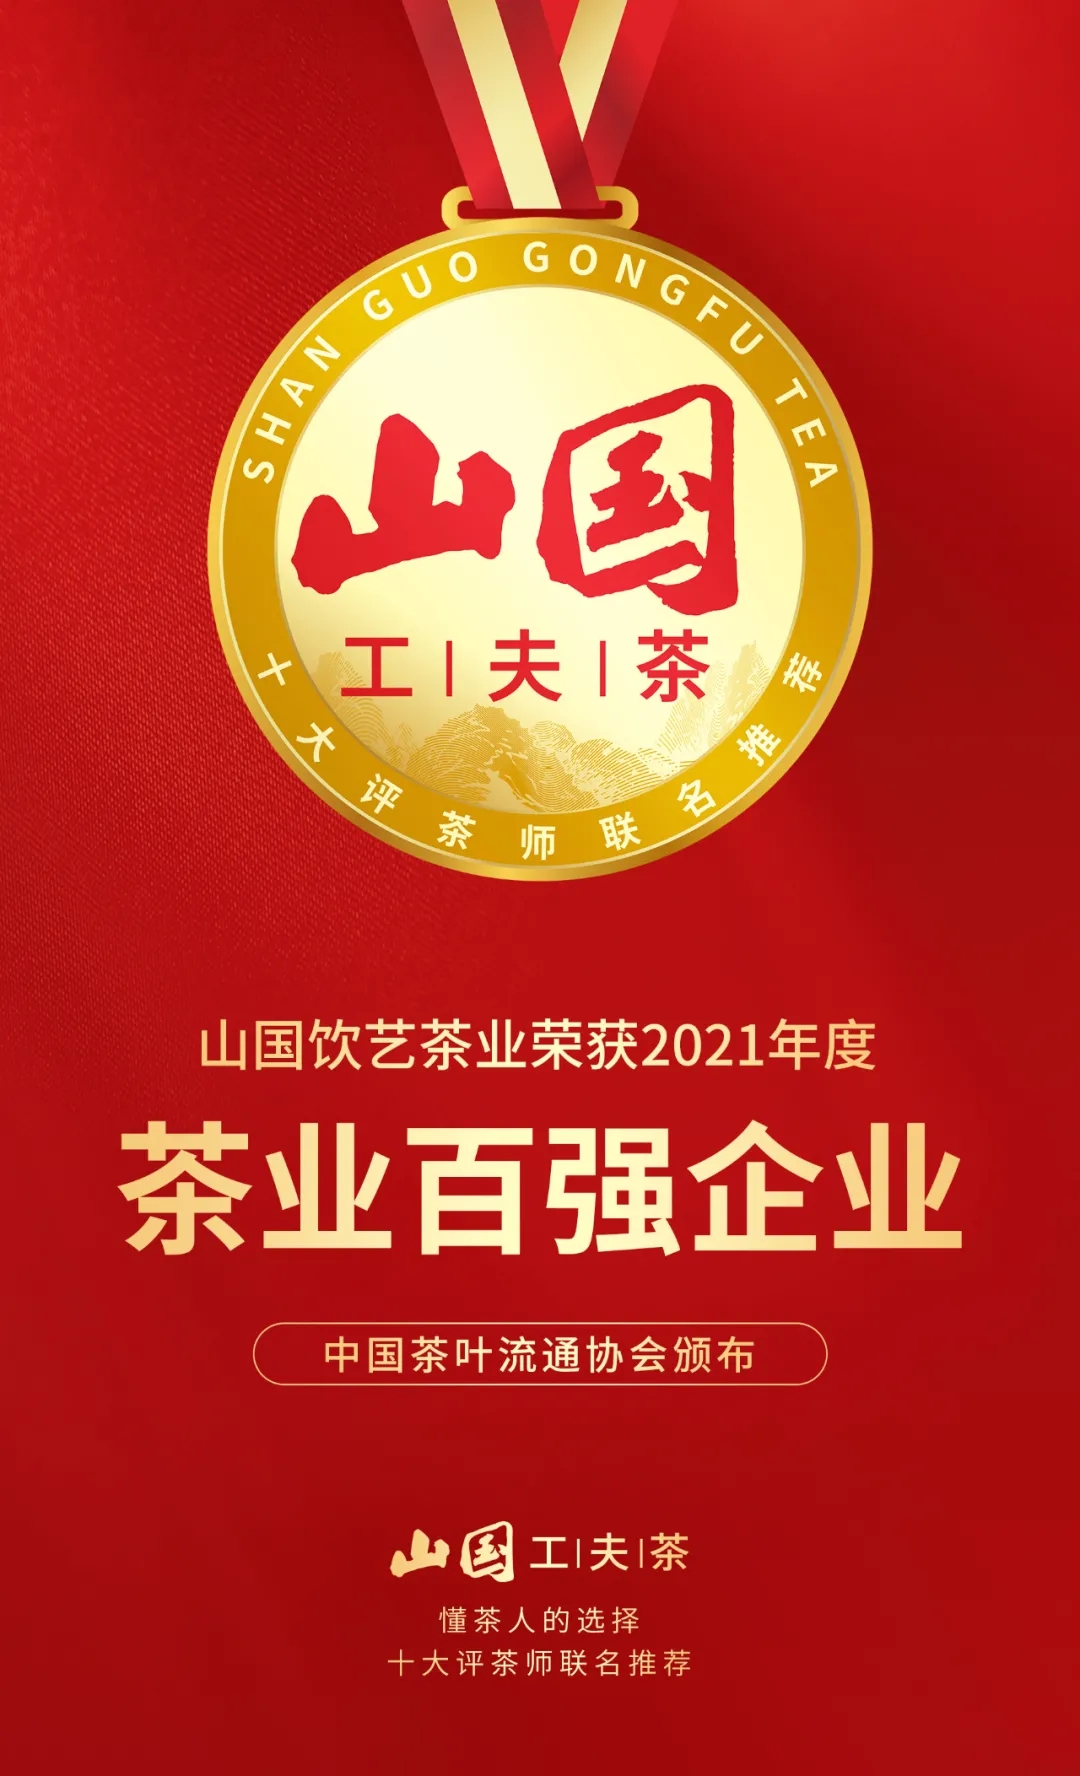 山国饮艺荣获“2021年度中国茶业百强企业”及“茶业畅销品牌”